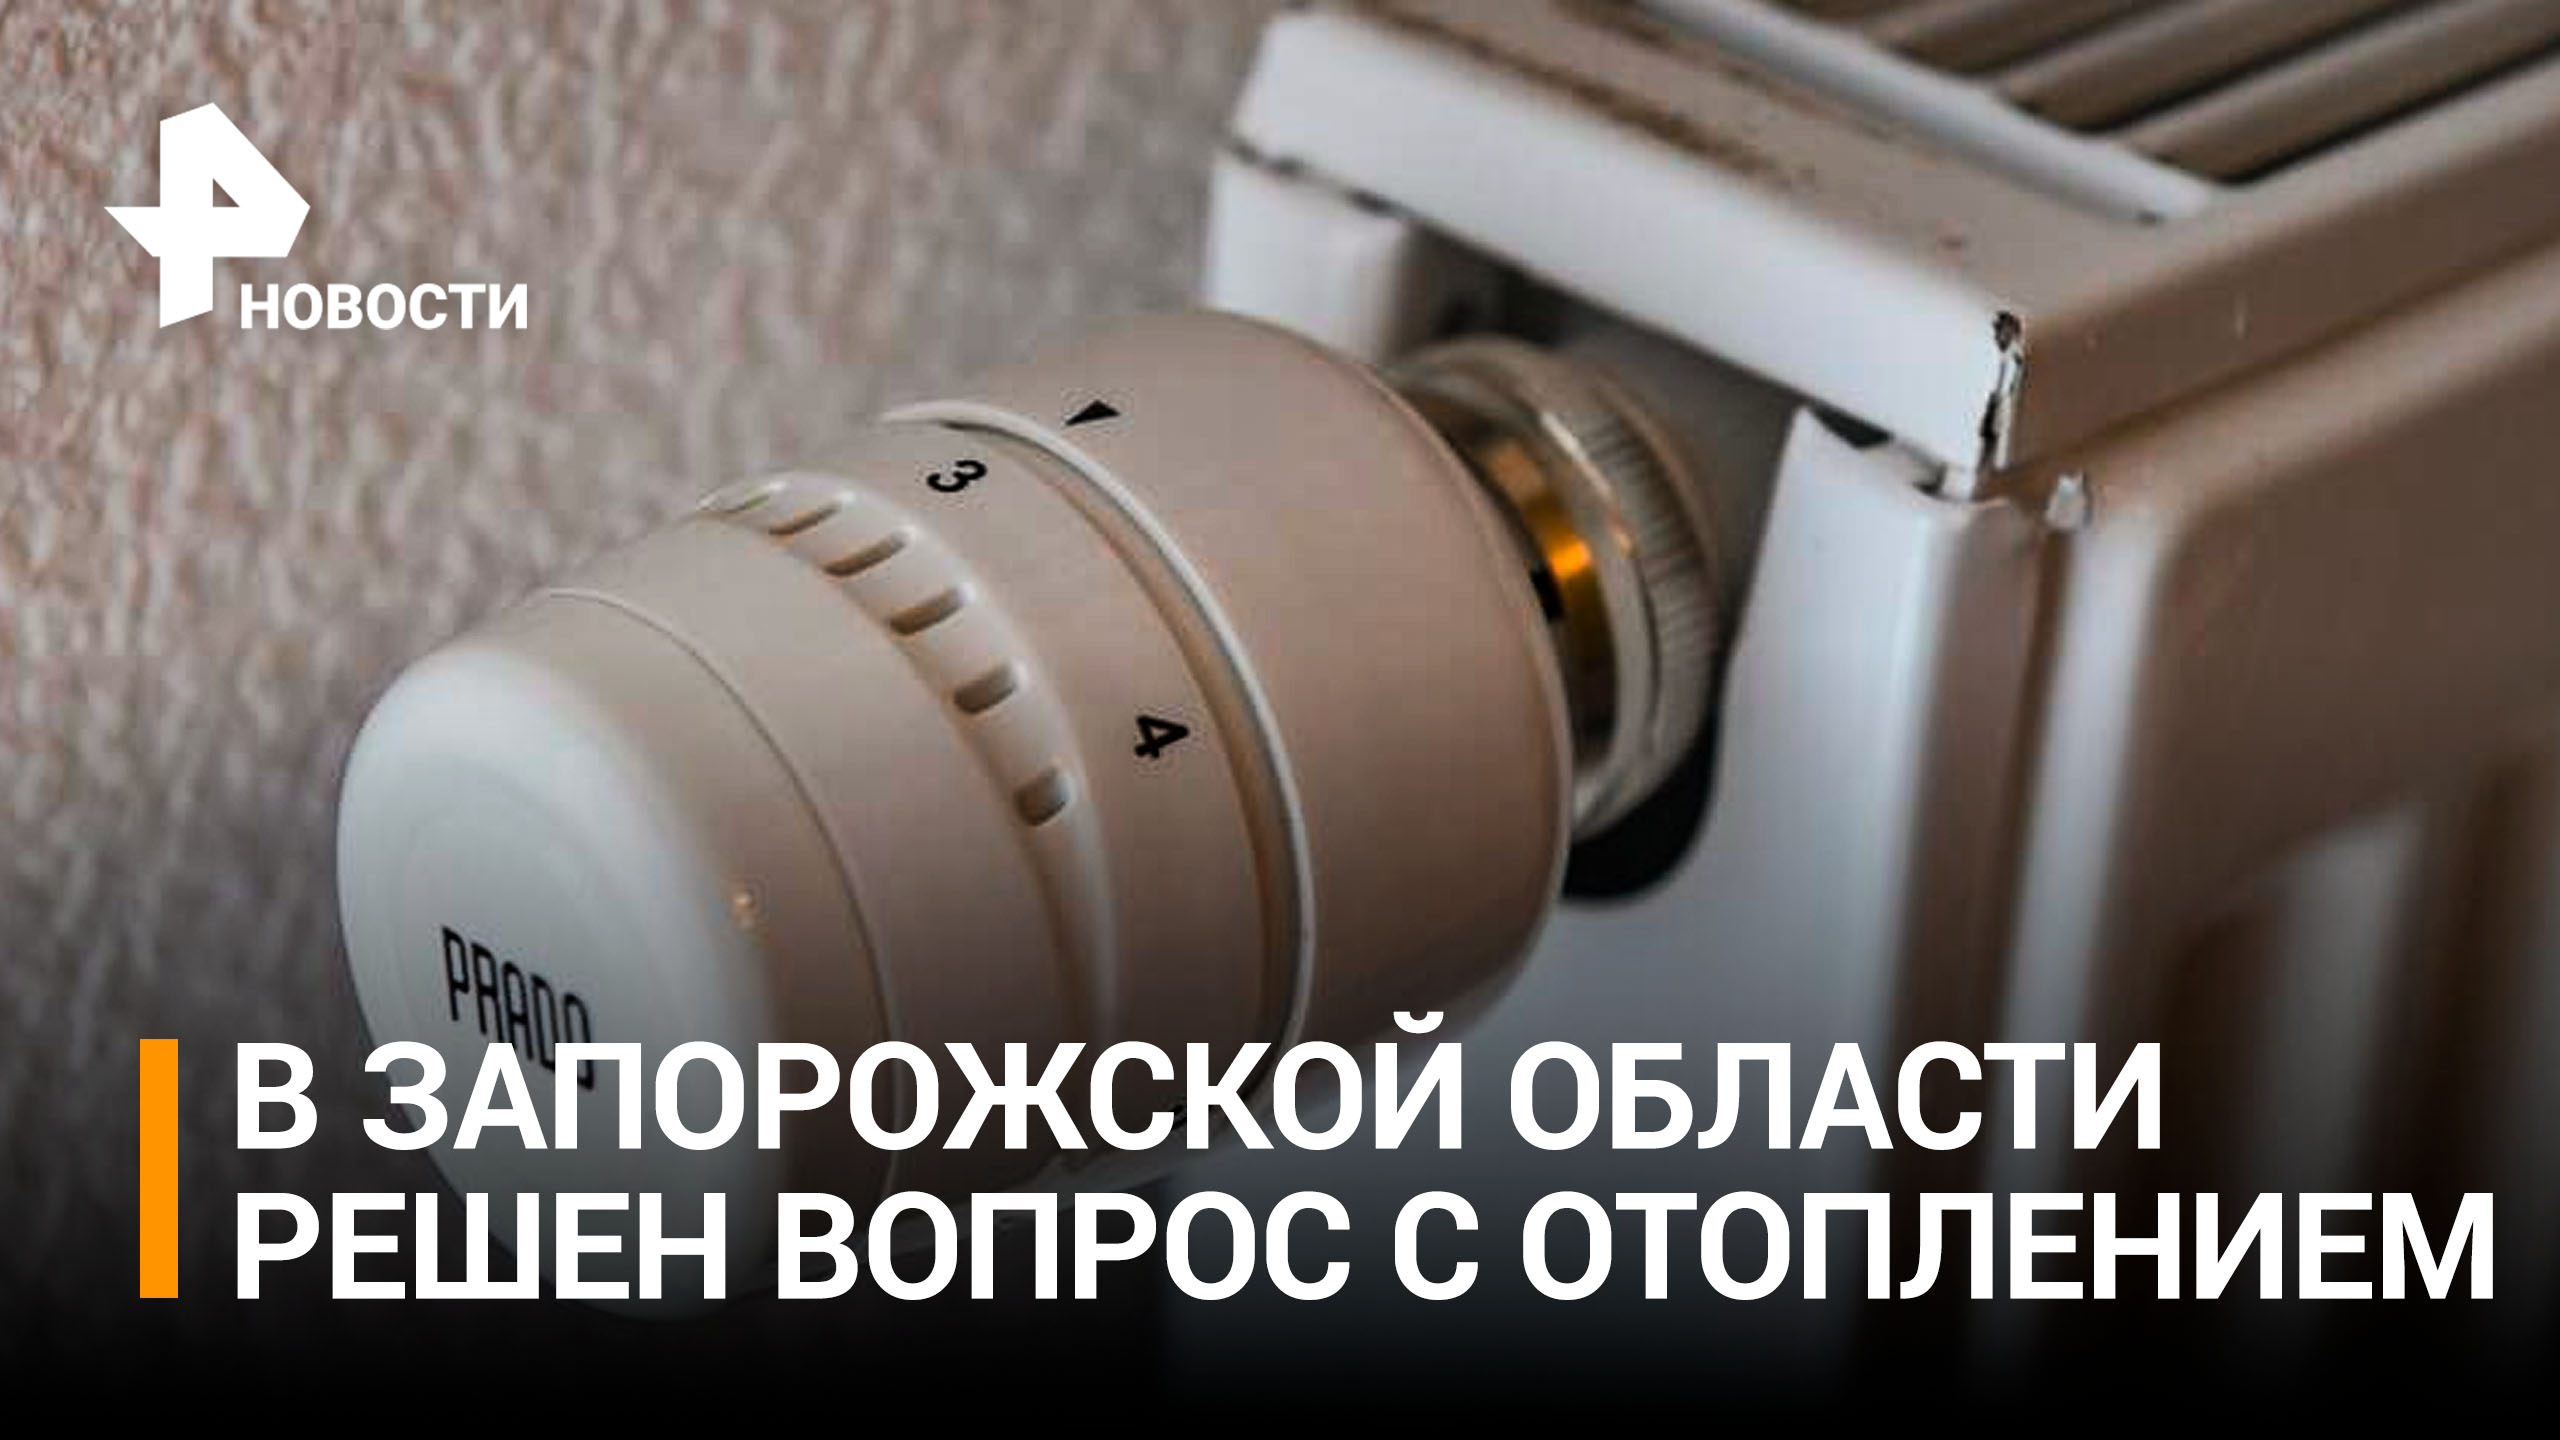 Стоимость отопления в Запорожской области снизилась в 10 раз / РЕН Новости